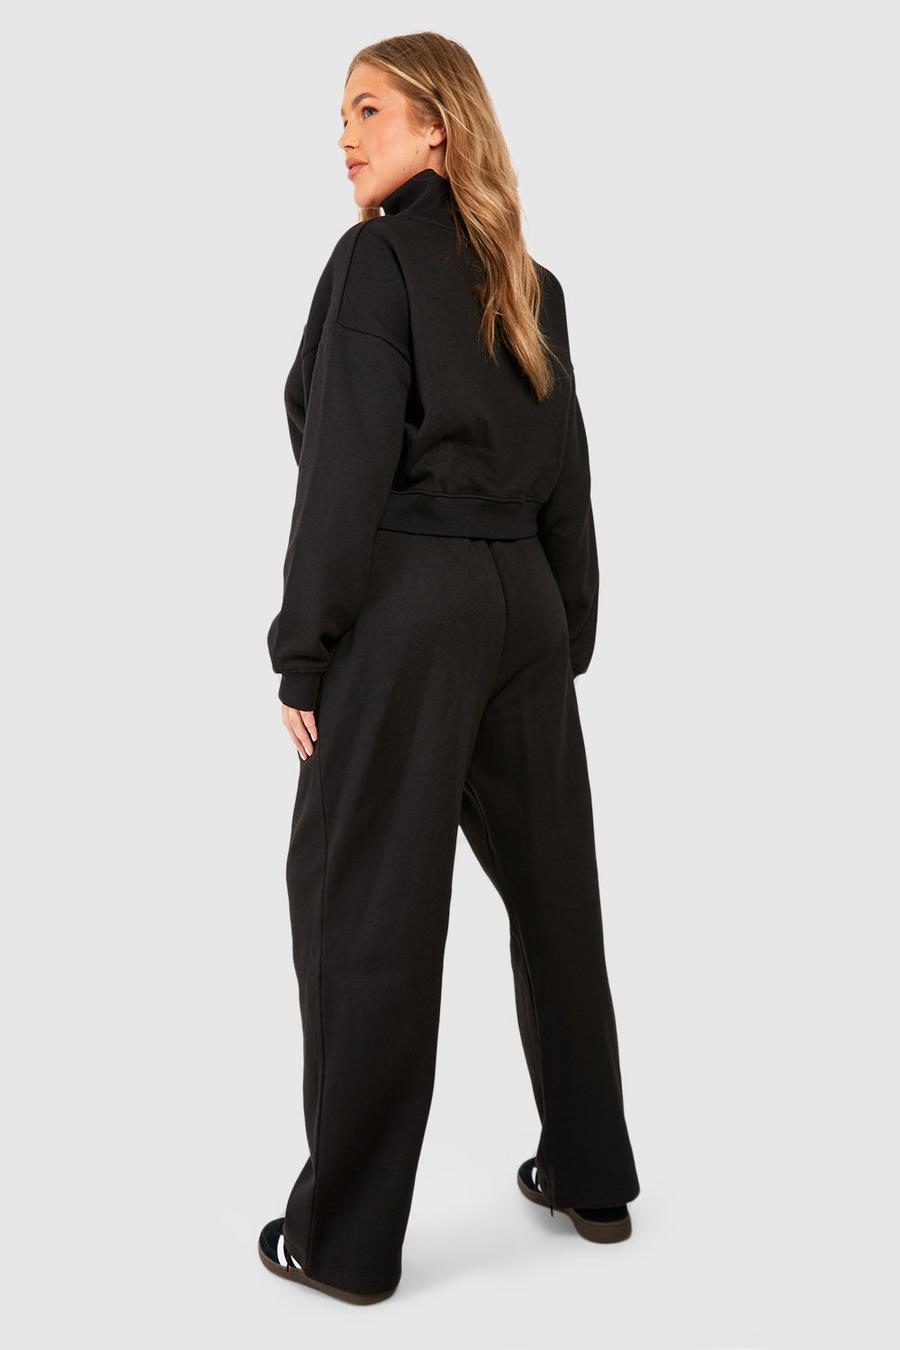 czarny komplet dresowy proste spodnie